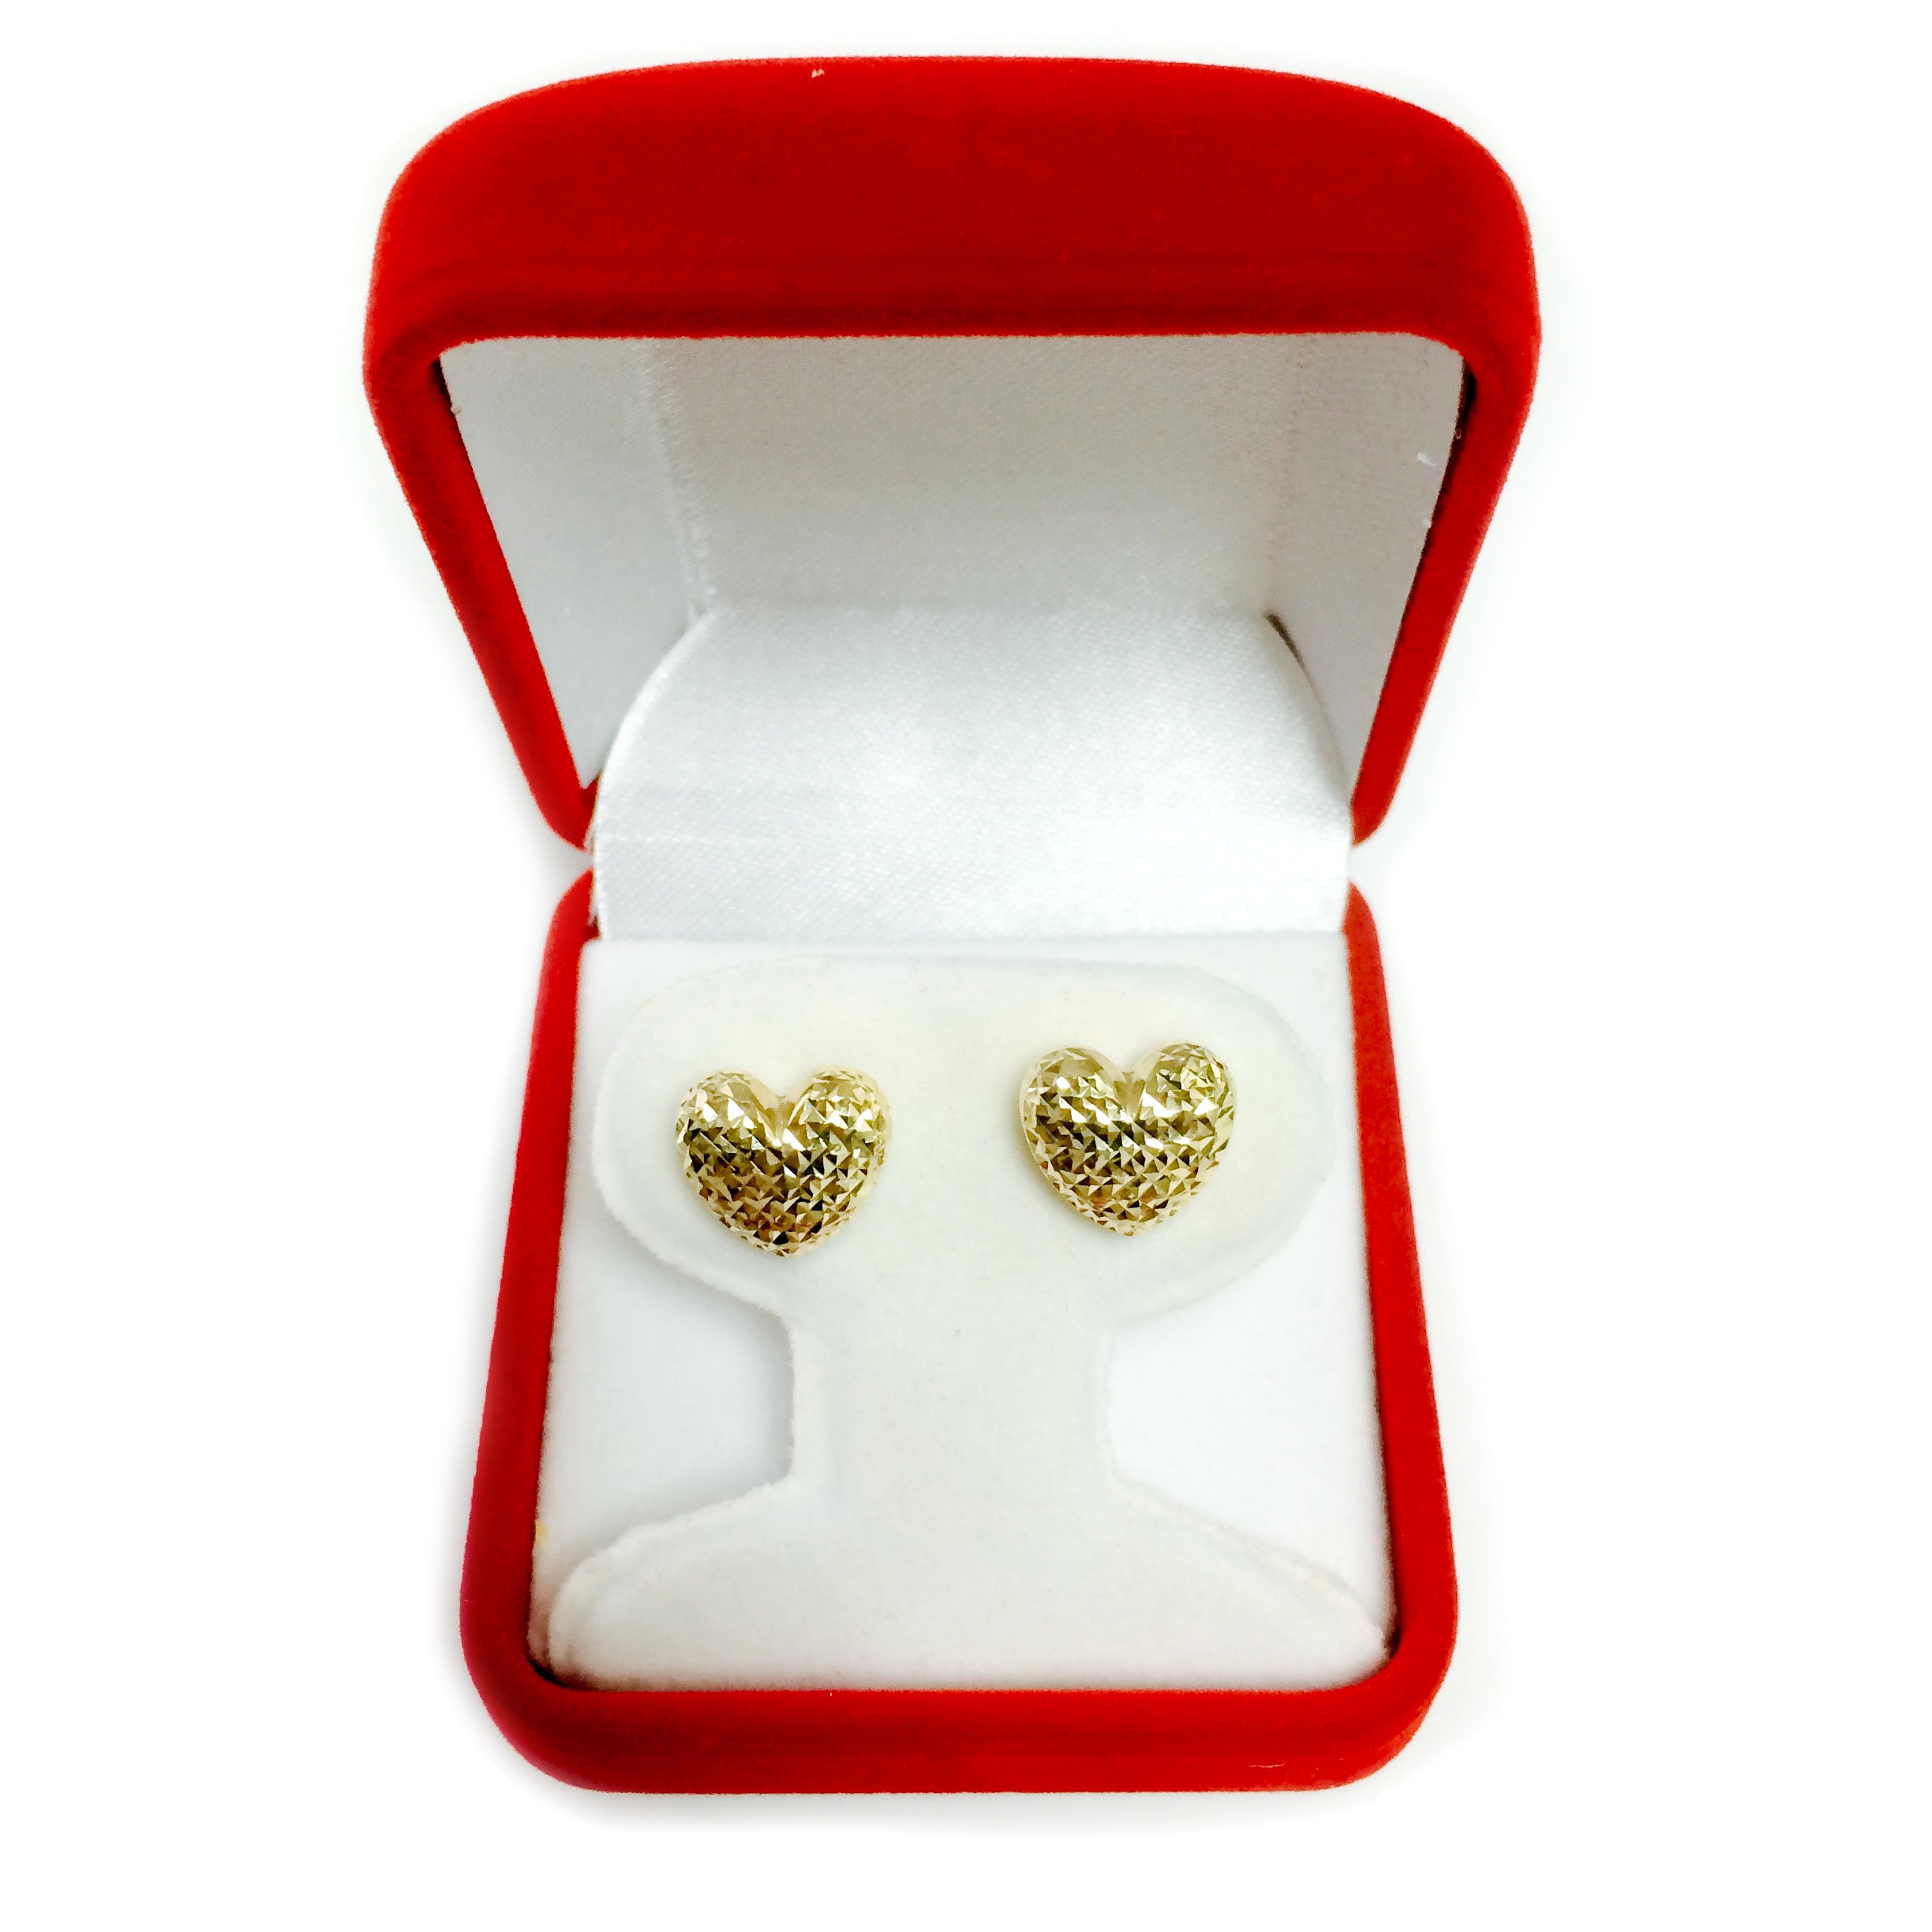 14k Gold Diamond Cut Puffy Heart Stud Earrings, 10 x 11mm